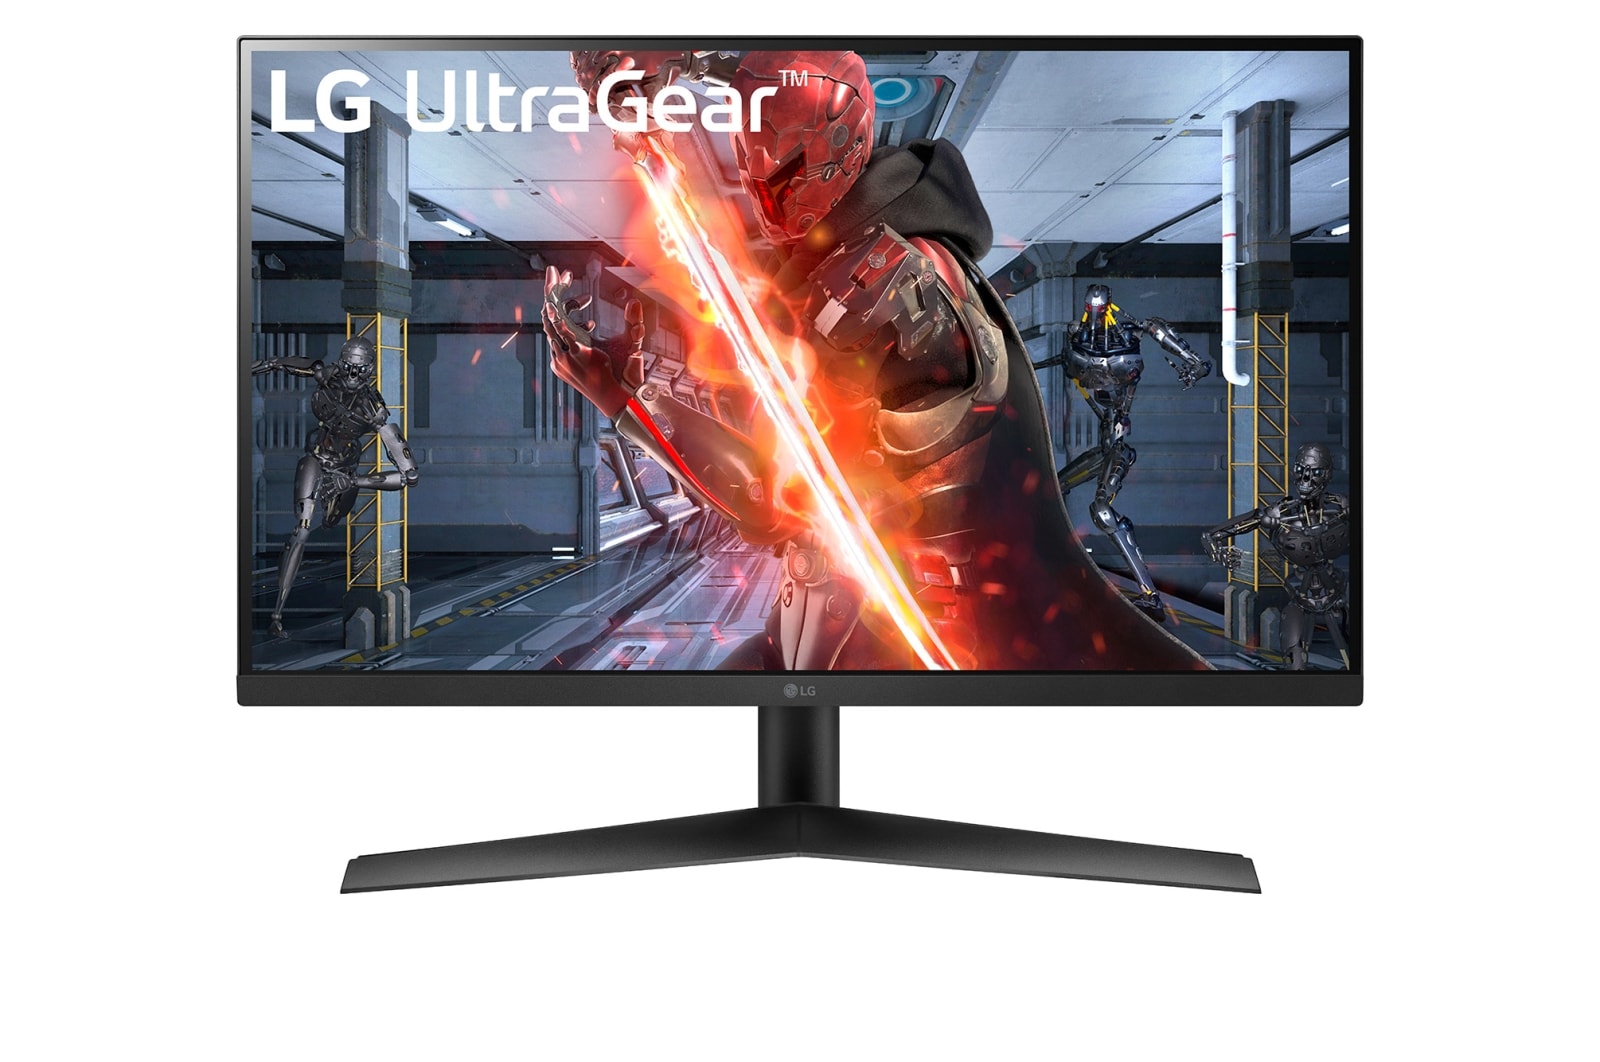 LG Игровой монитор 27” UltraGear™ Full HD IPS 1ms (GtG), NVIDIA® G-SYNC® Compatible, 27GN60R-B